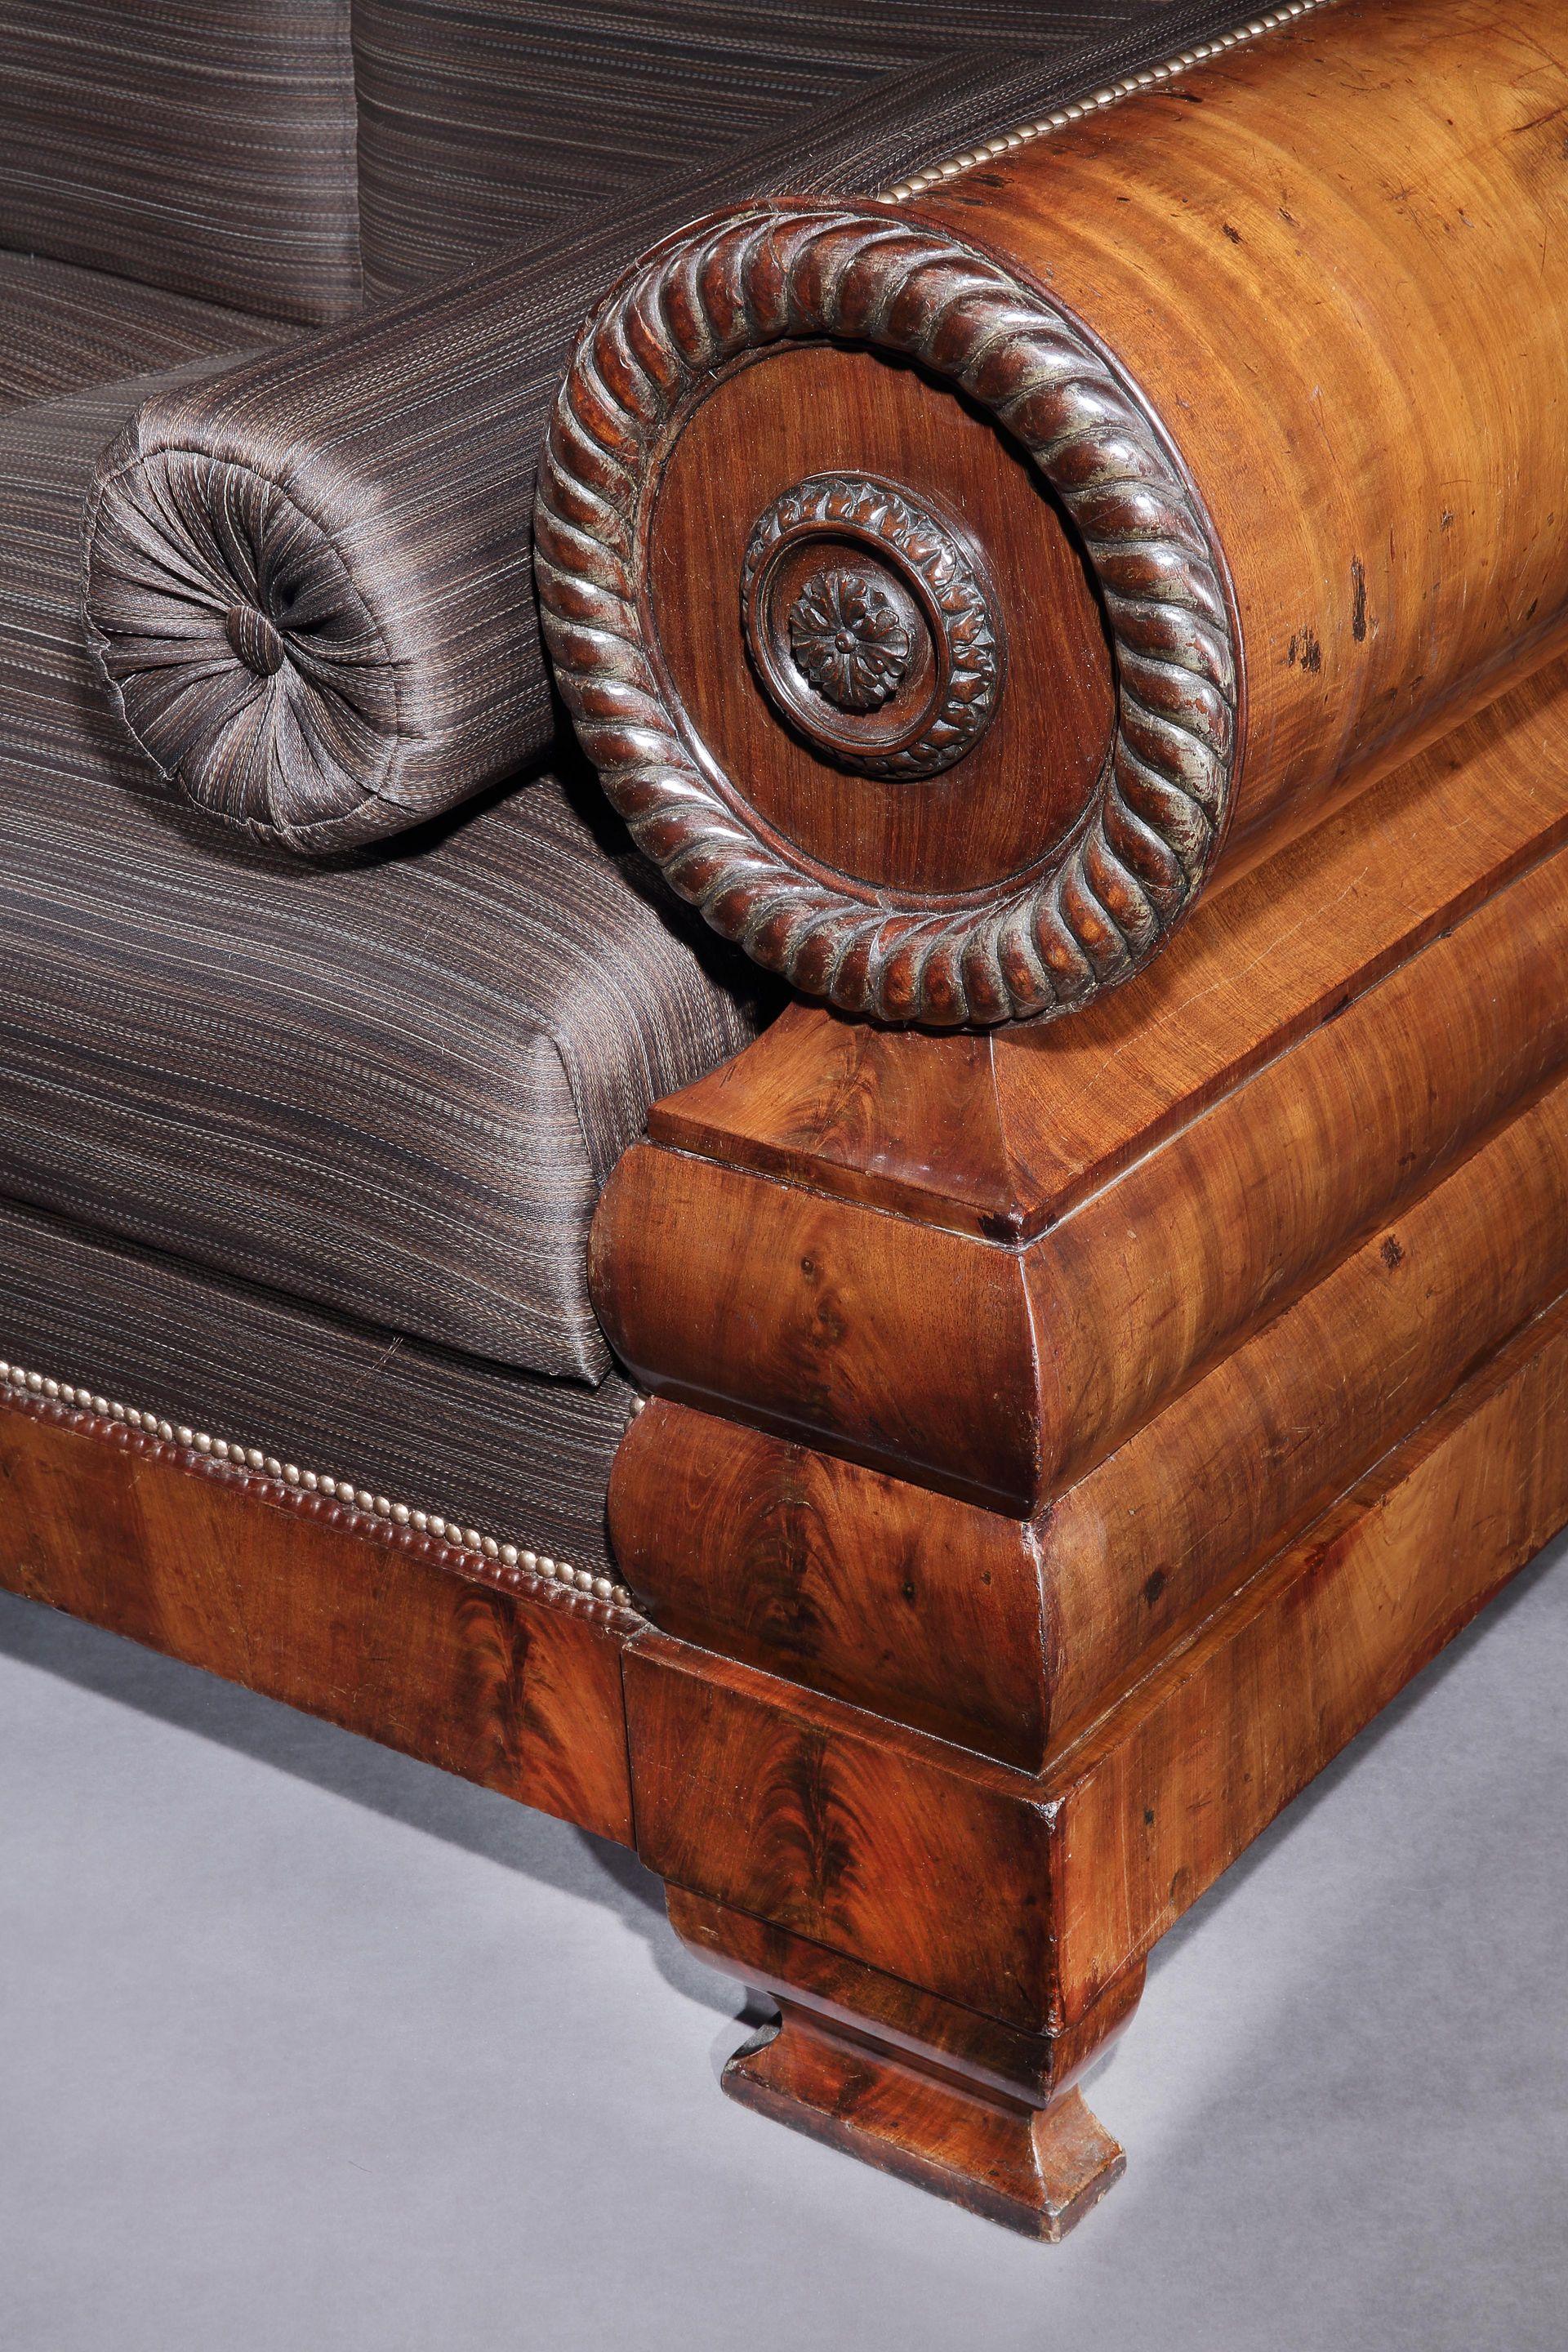 Dieses hübsche Sofa befindet sich in einem seltenen Originalzustand, bei dem alle ursprünglichen Holz- und Rosshaarfüllungen erhalten sind. Die Form ist kühn und fließend und das geschnitzte Ornament sehr gut ausgeführt. Der Schreiner hat Furniere